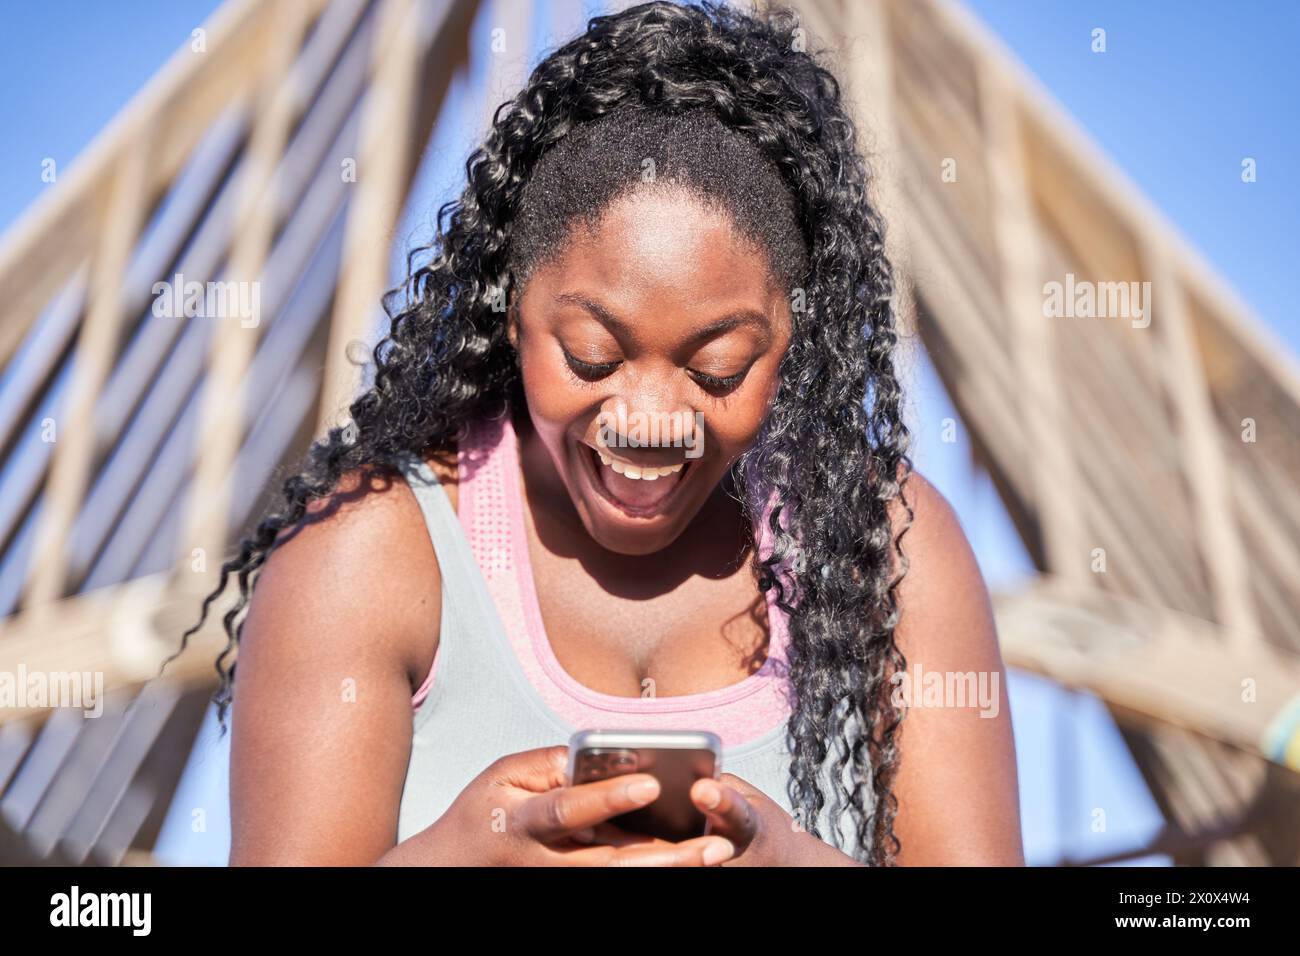 Porträt einer afroamerikanischen Frau mit lockigem Haar, die mit einem überraschten Gesicht auf ihr Smartphone schaut. Stockfoto